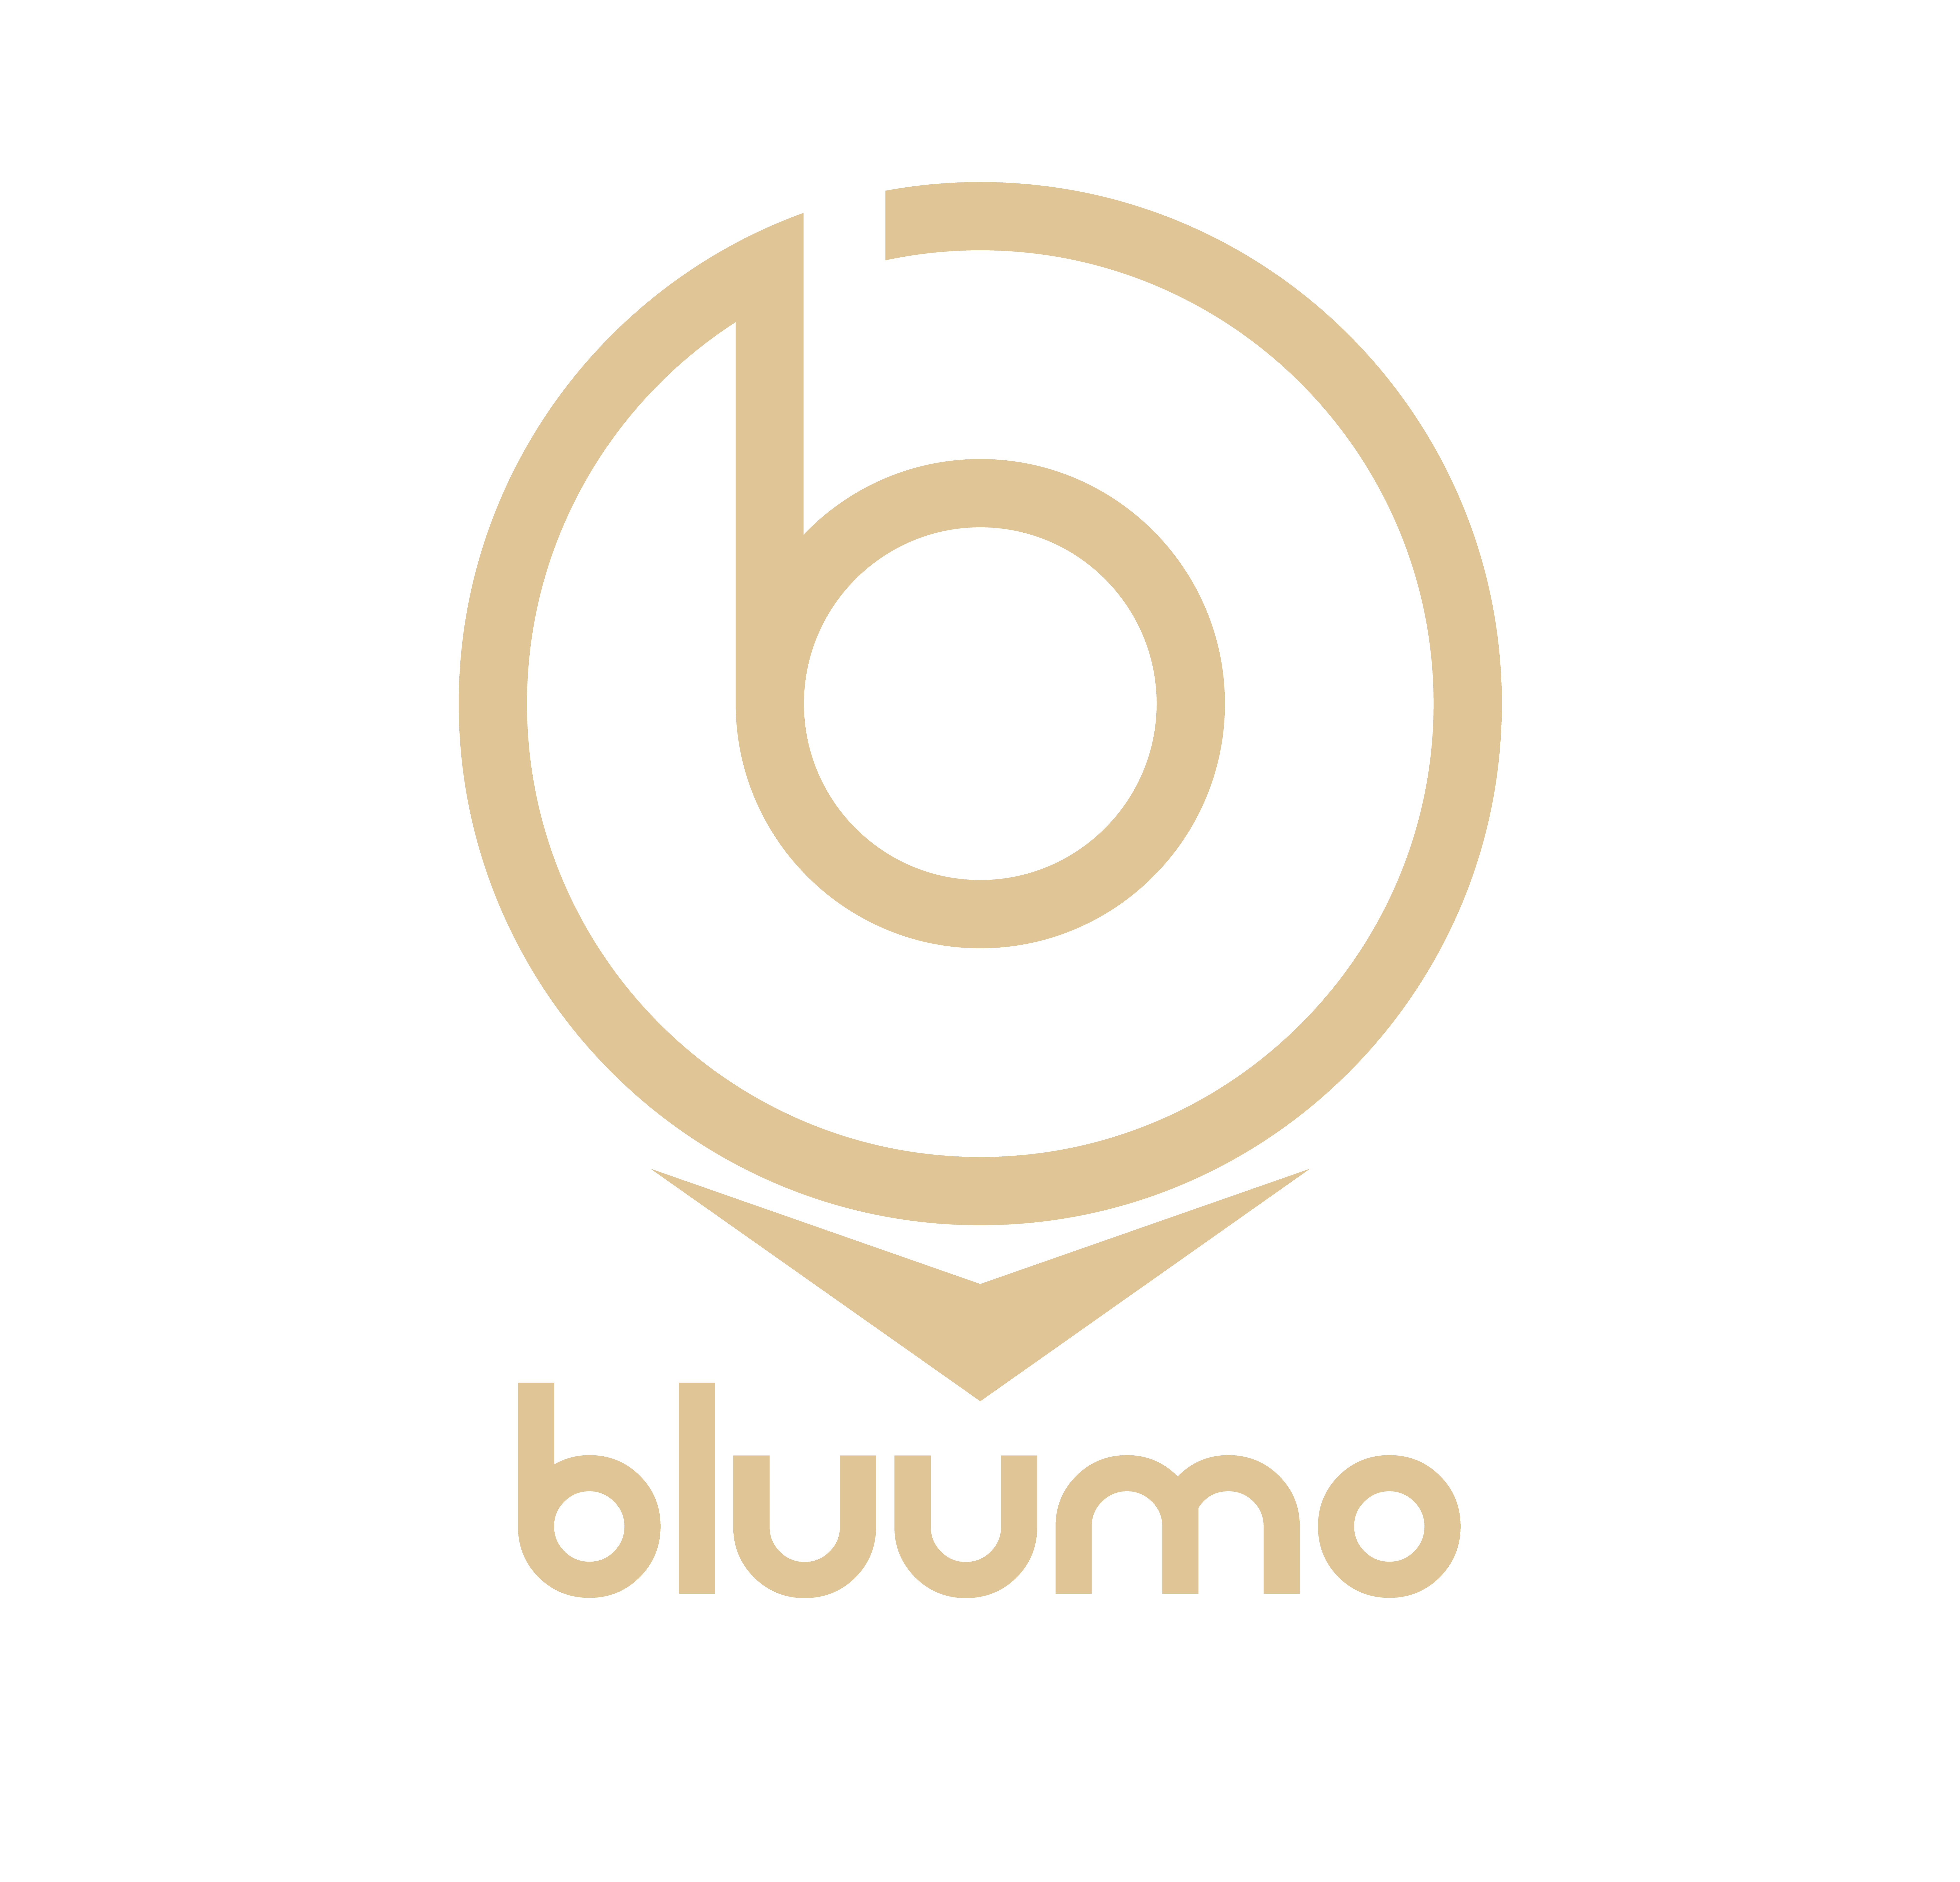 Bluumo logo